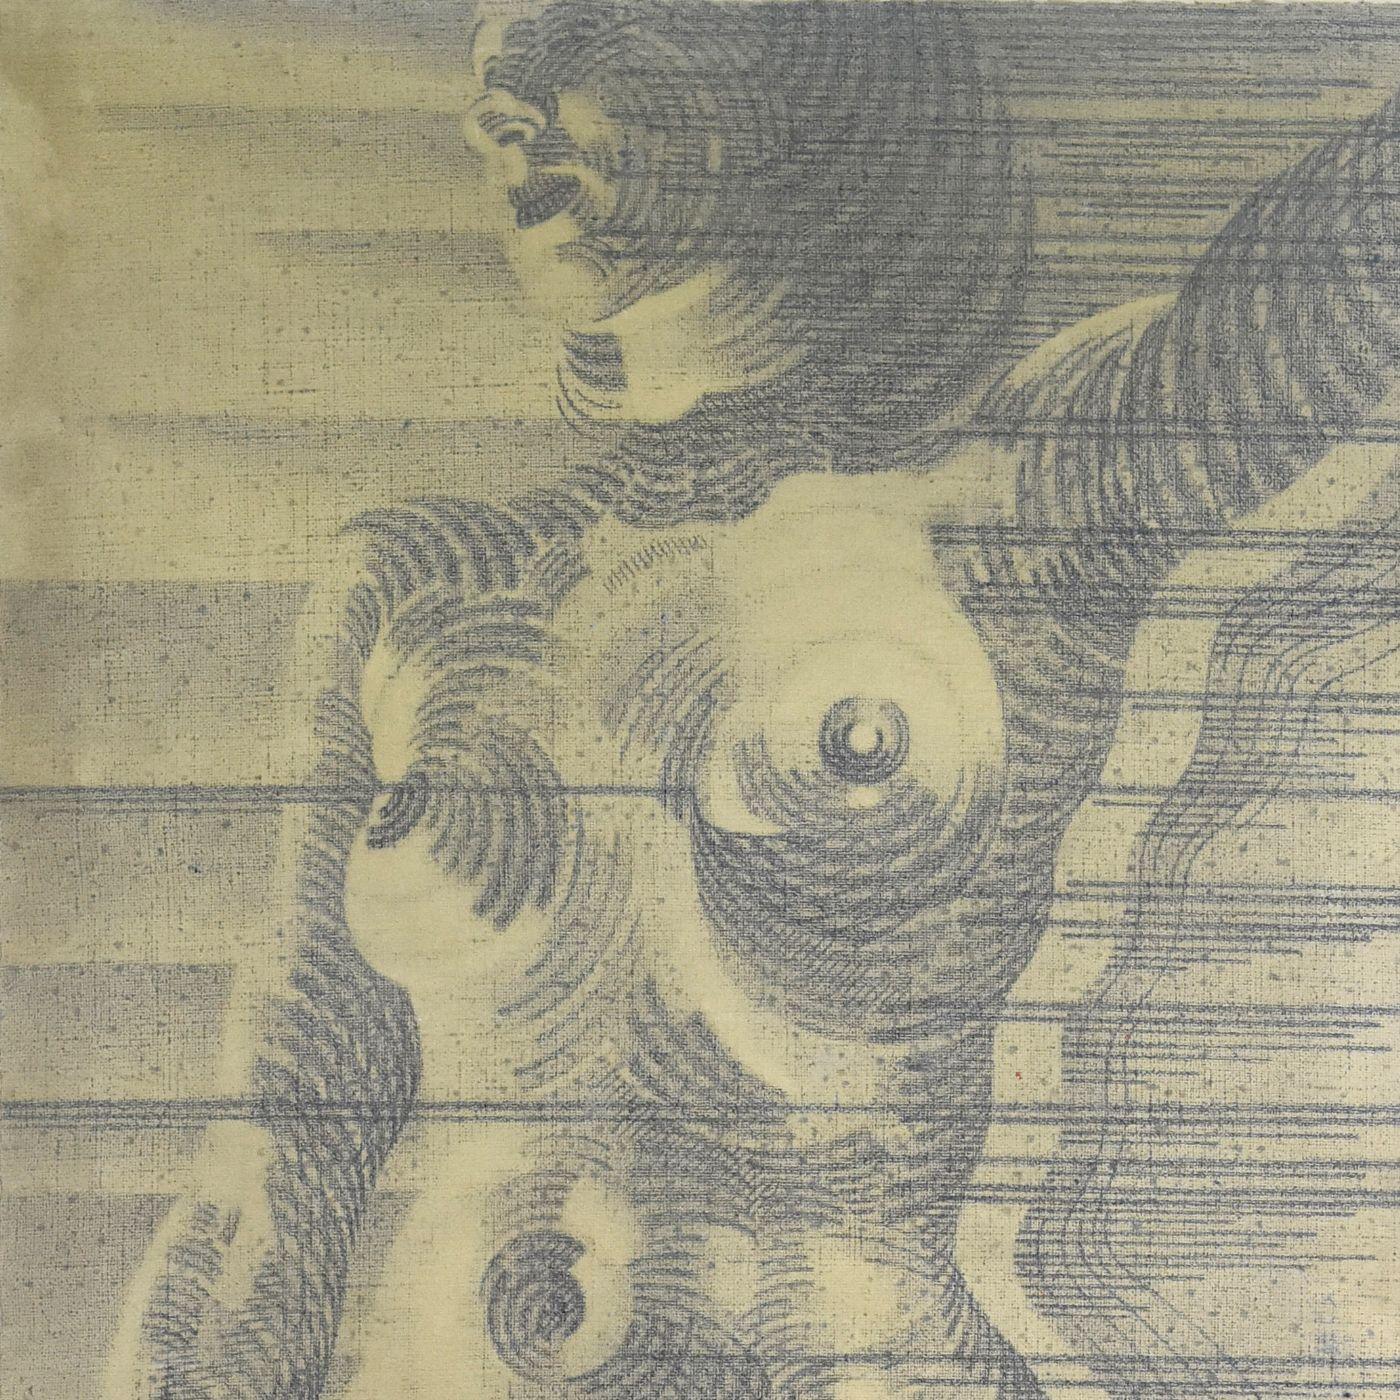 Kohle und Rötel auf französischem Schulstoff Martinez 60er Jahre (209x186 cm), der die Silhouette einer Frau darstellt.